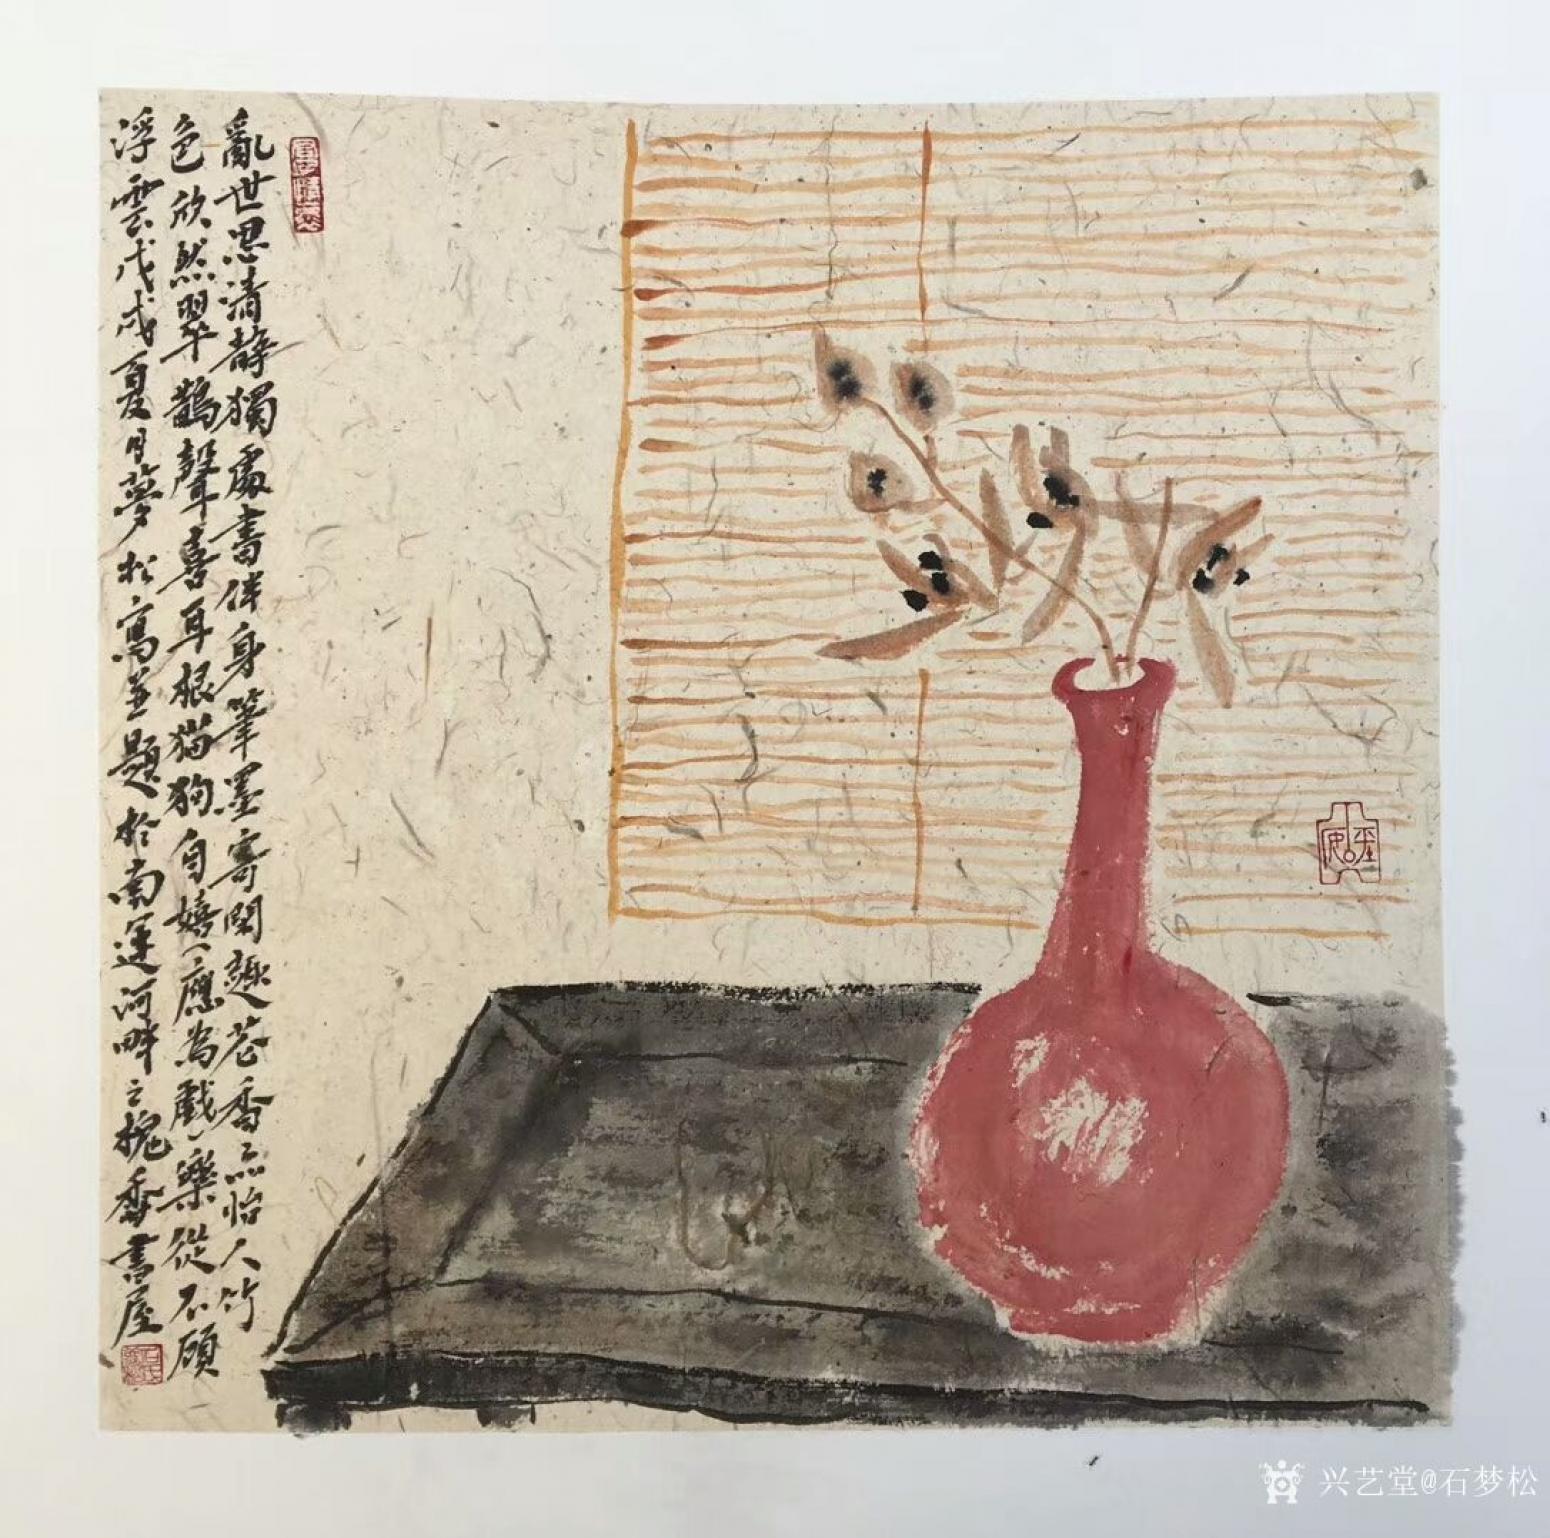 石梦松国画作品《花瓶》